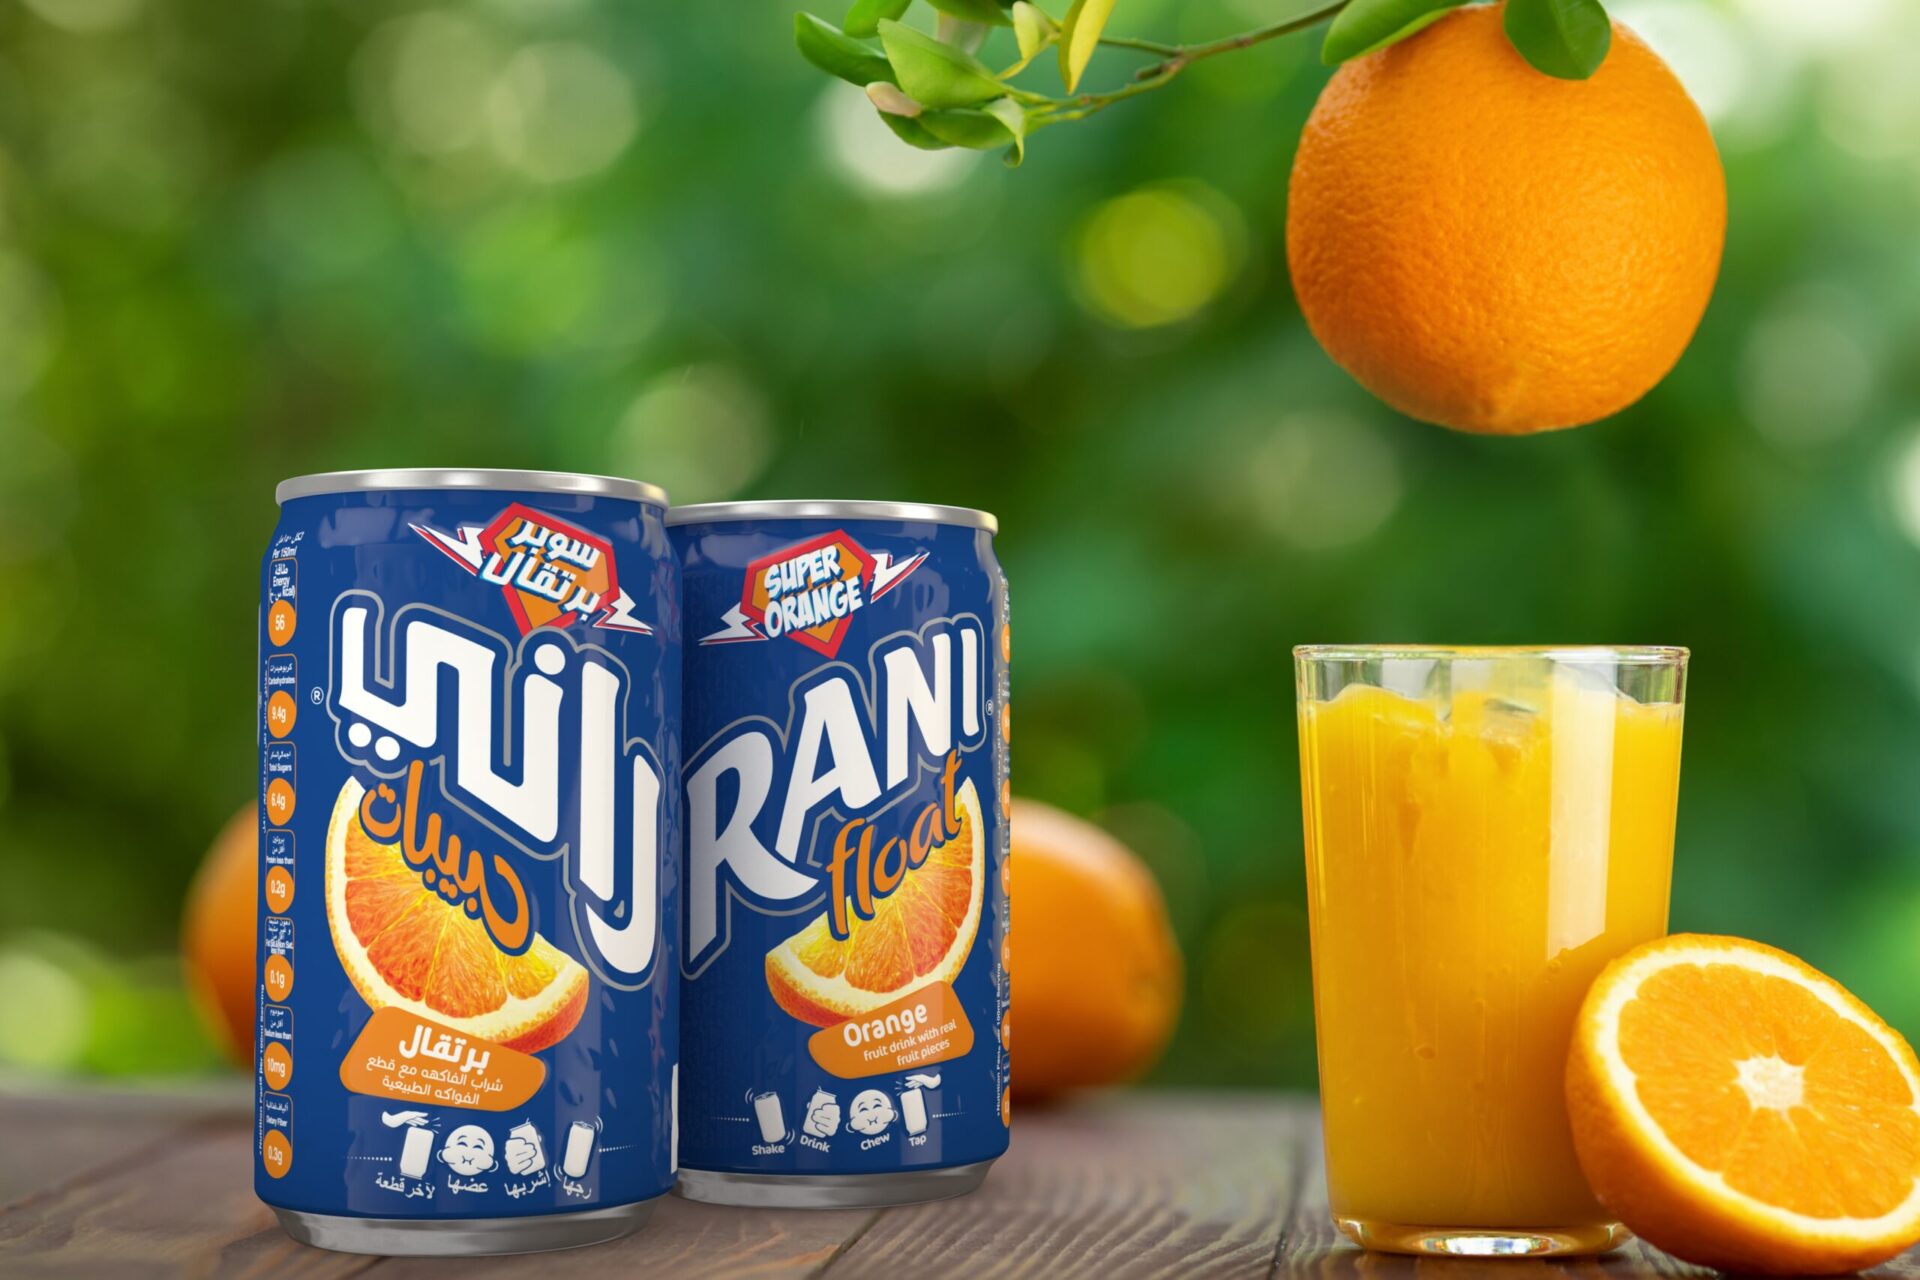 rani by coca cola drink packaging design agency UAE Dubai Qatar